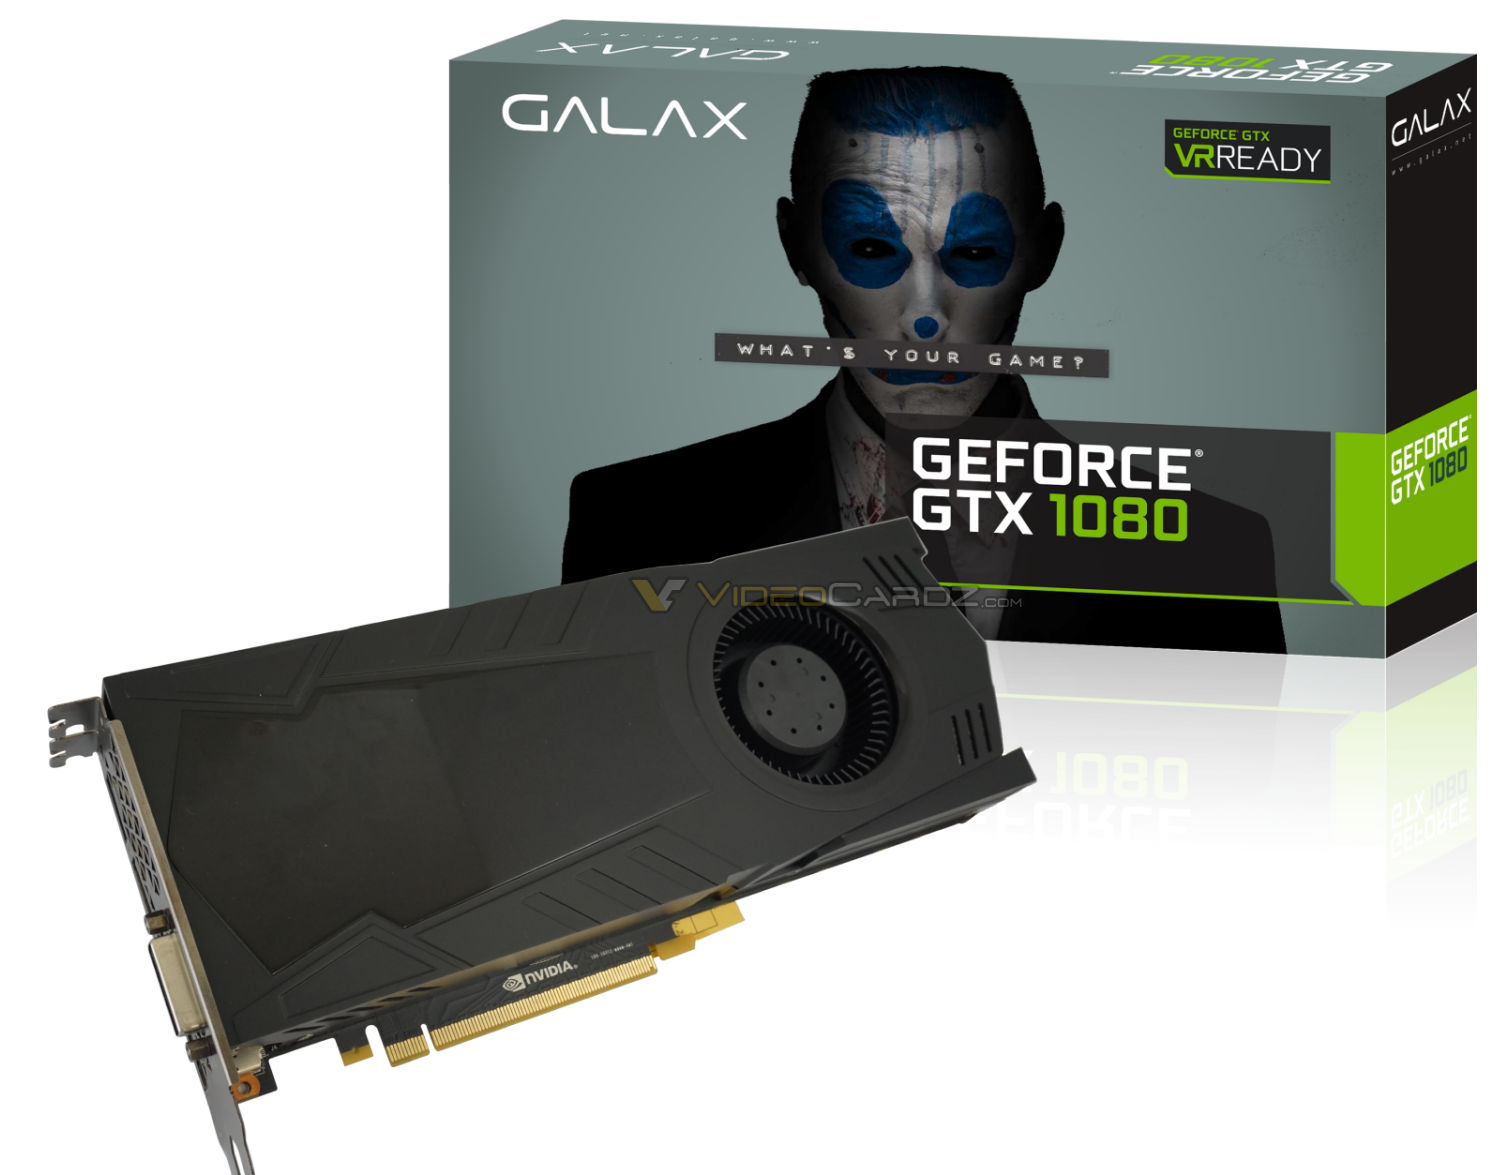 Gakax GeForce GTX 1080